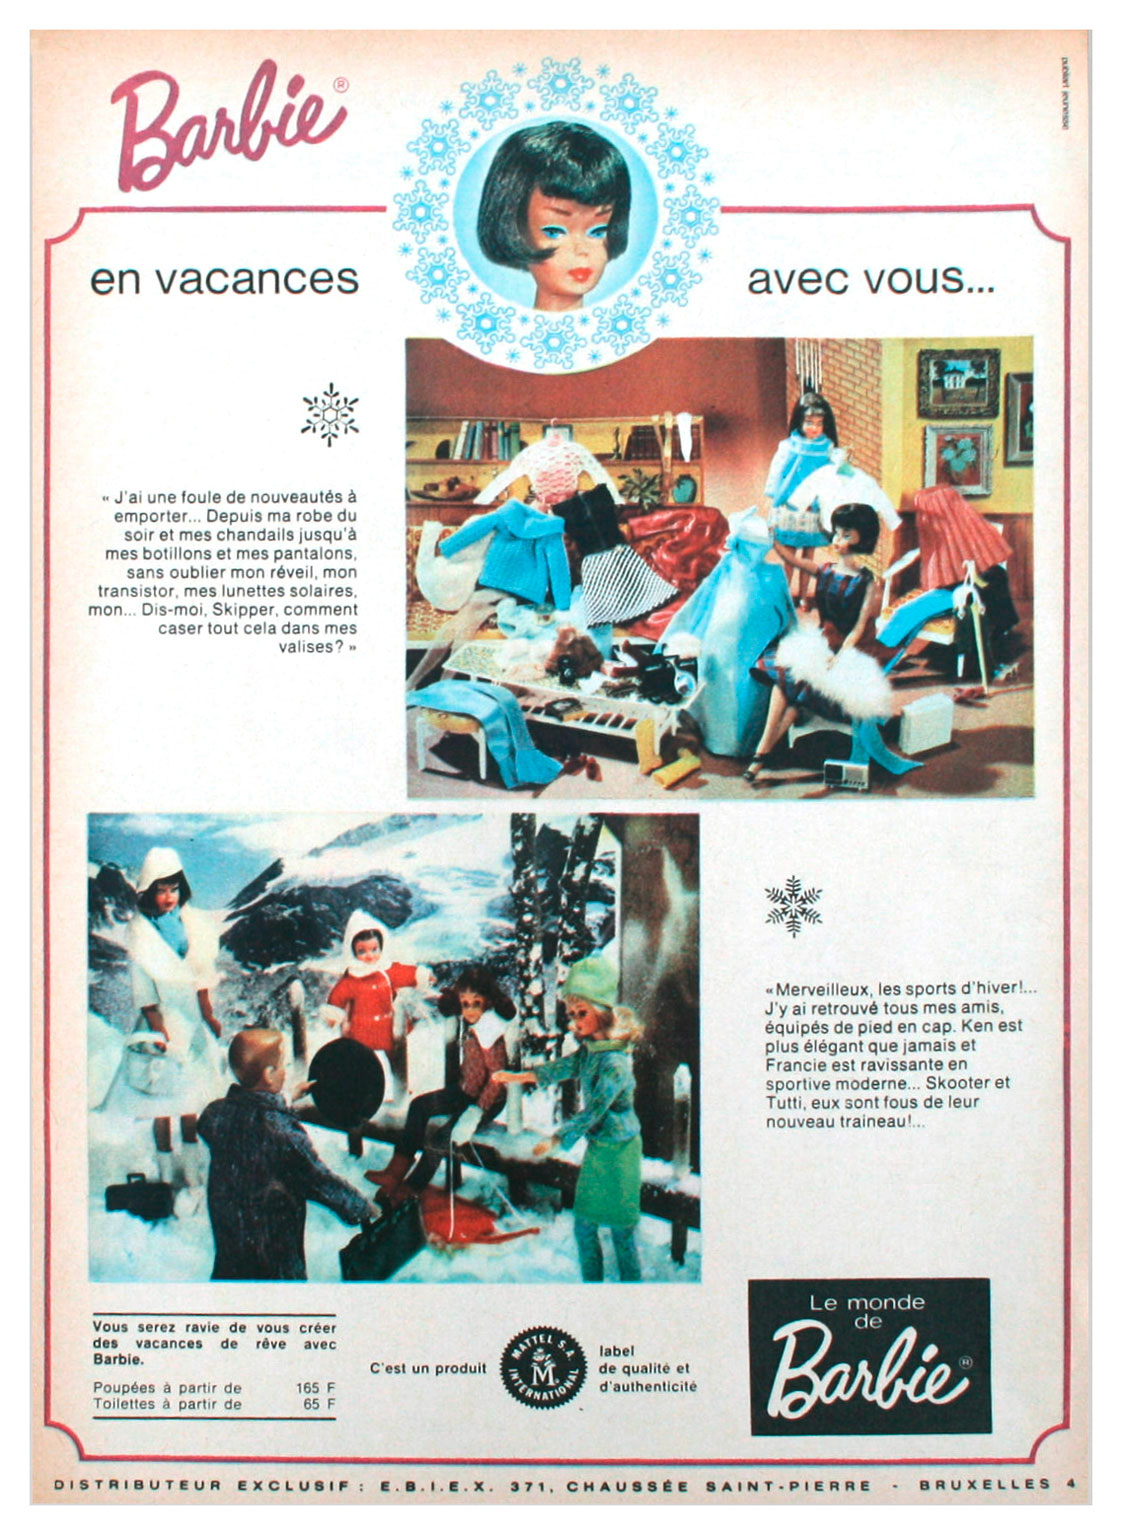 1966 Belgian Barbie advertisement